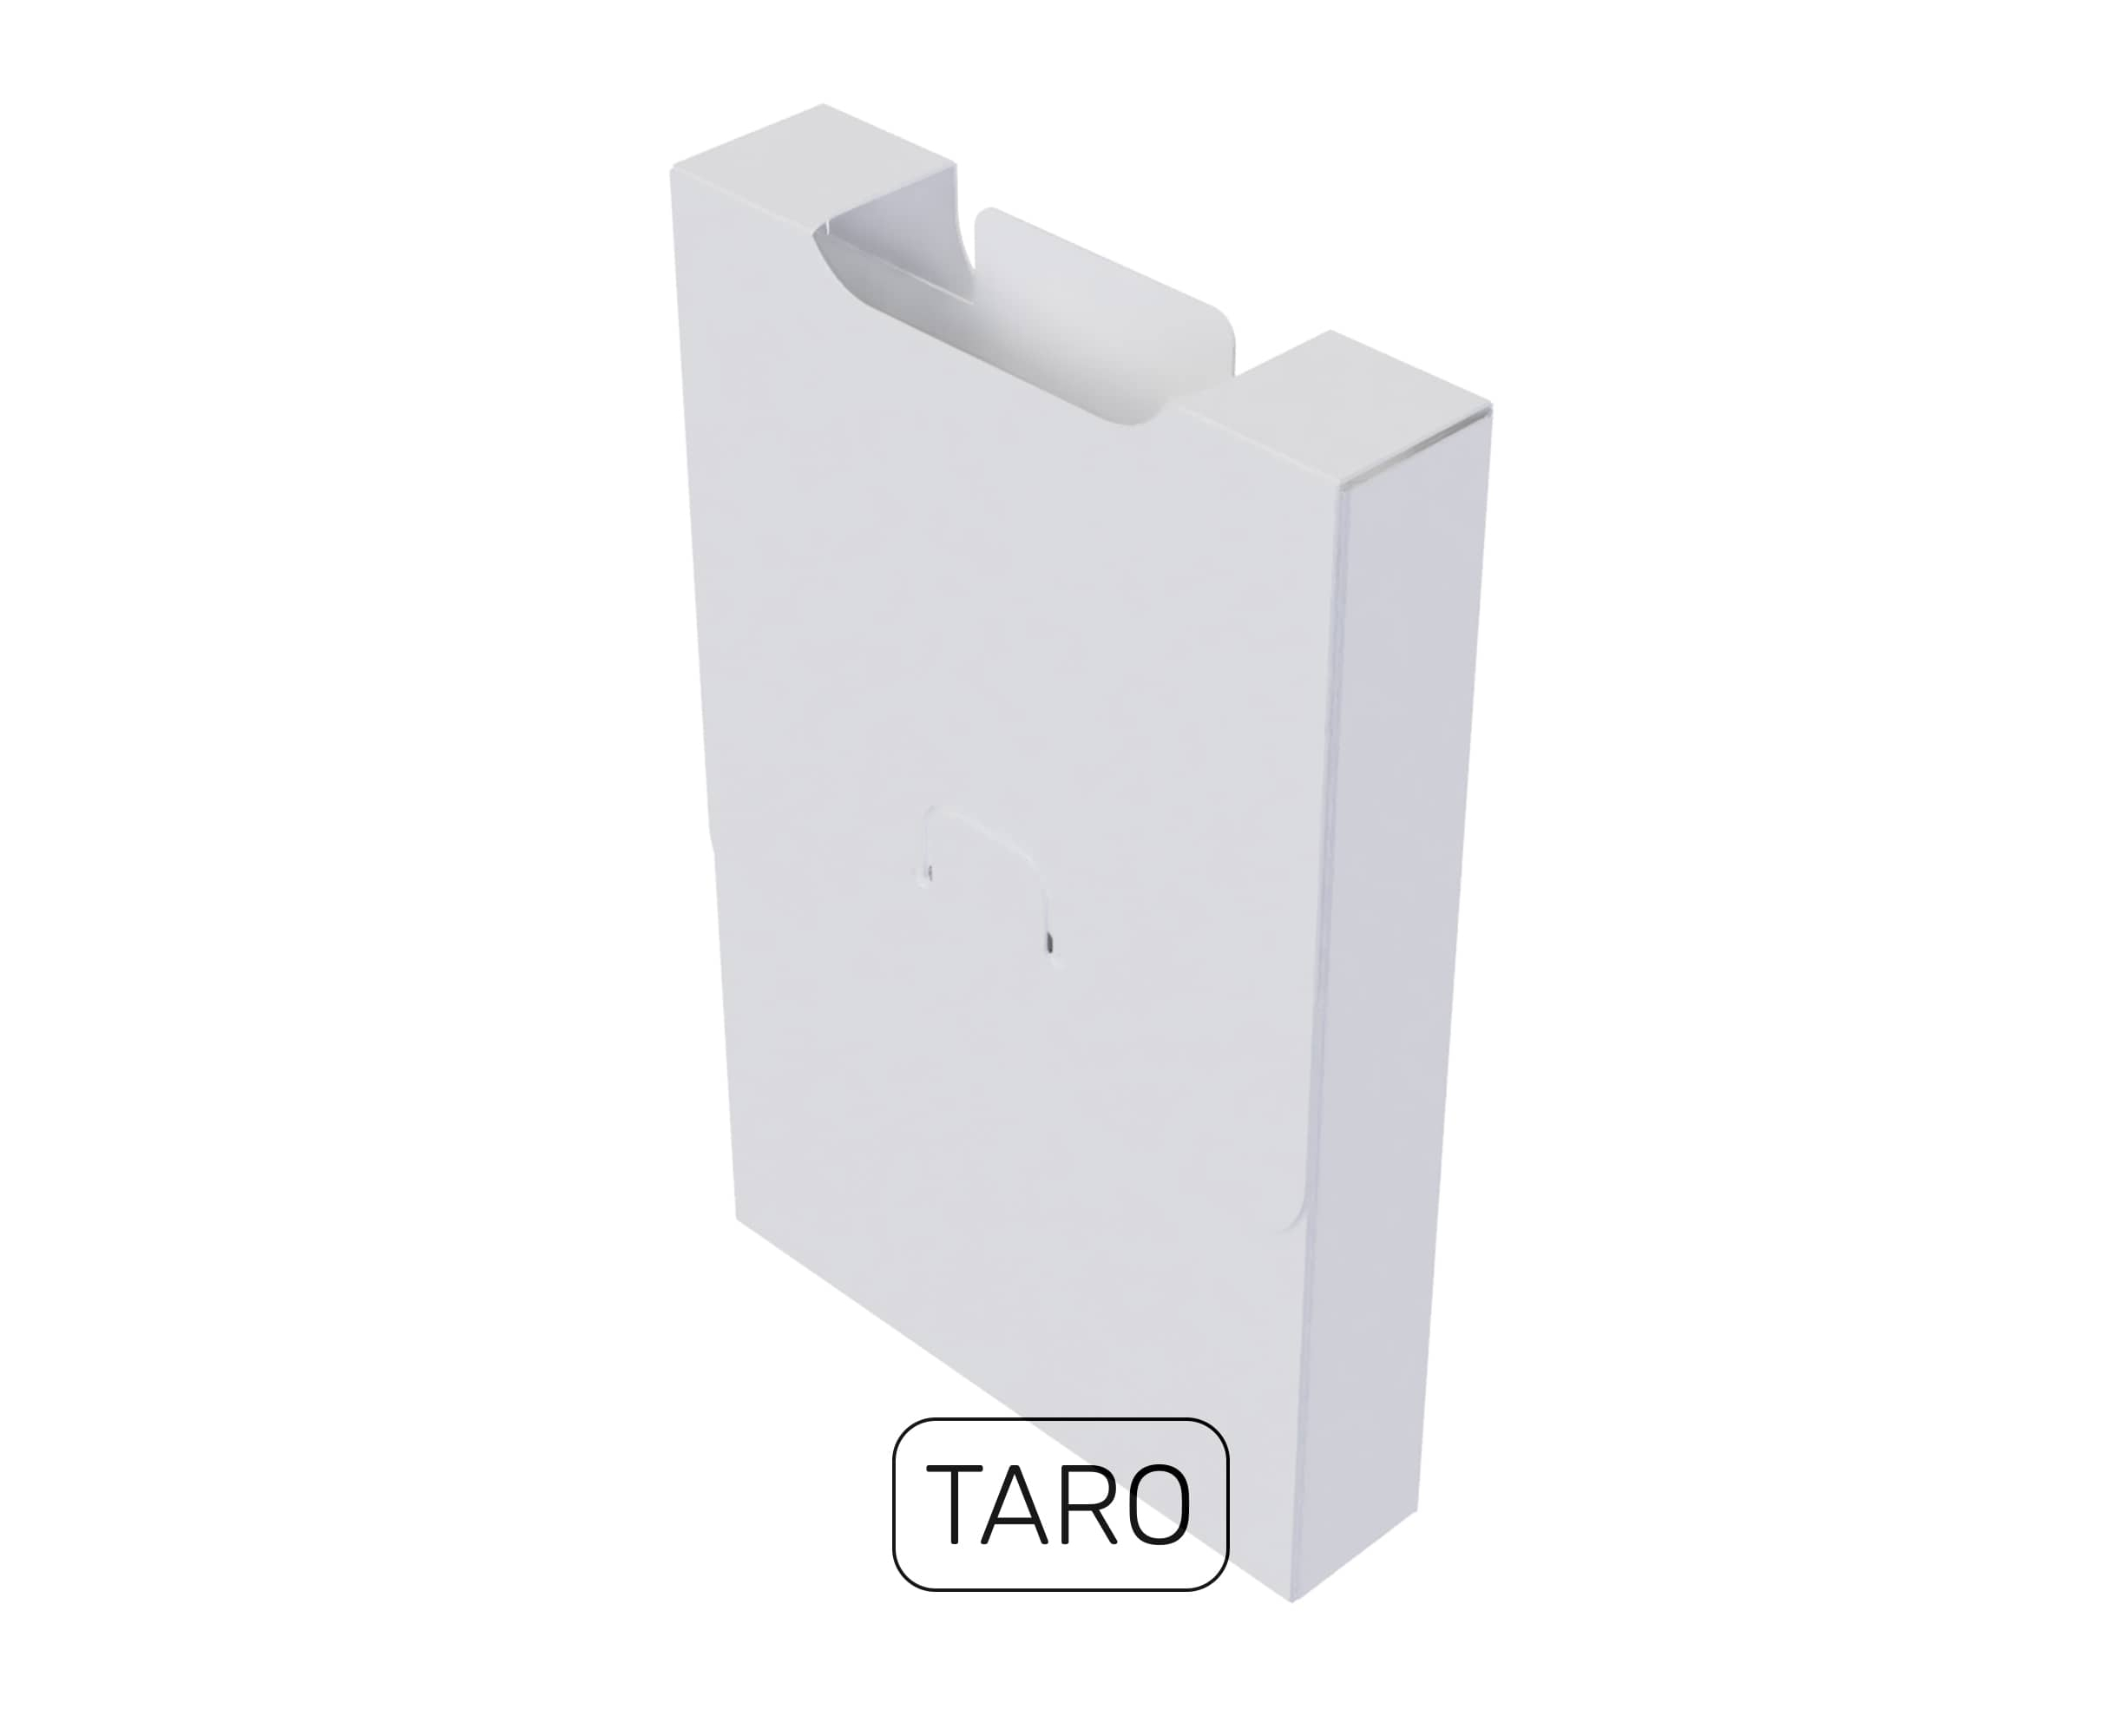  UniqCardFile Taro 20mm ()